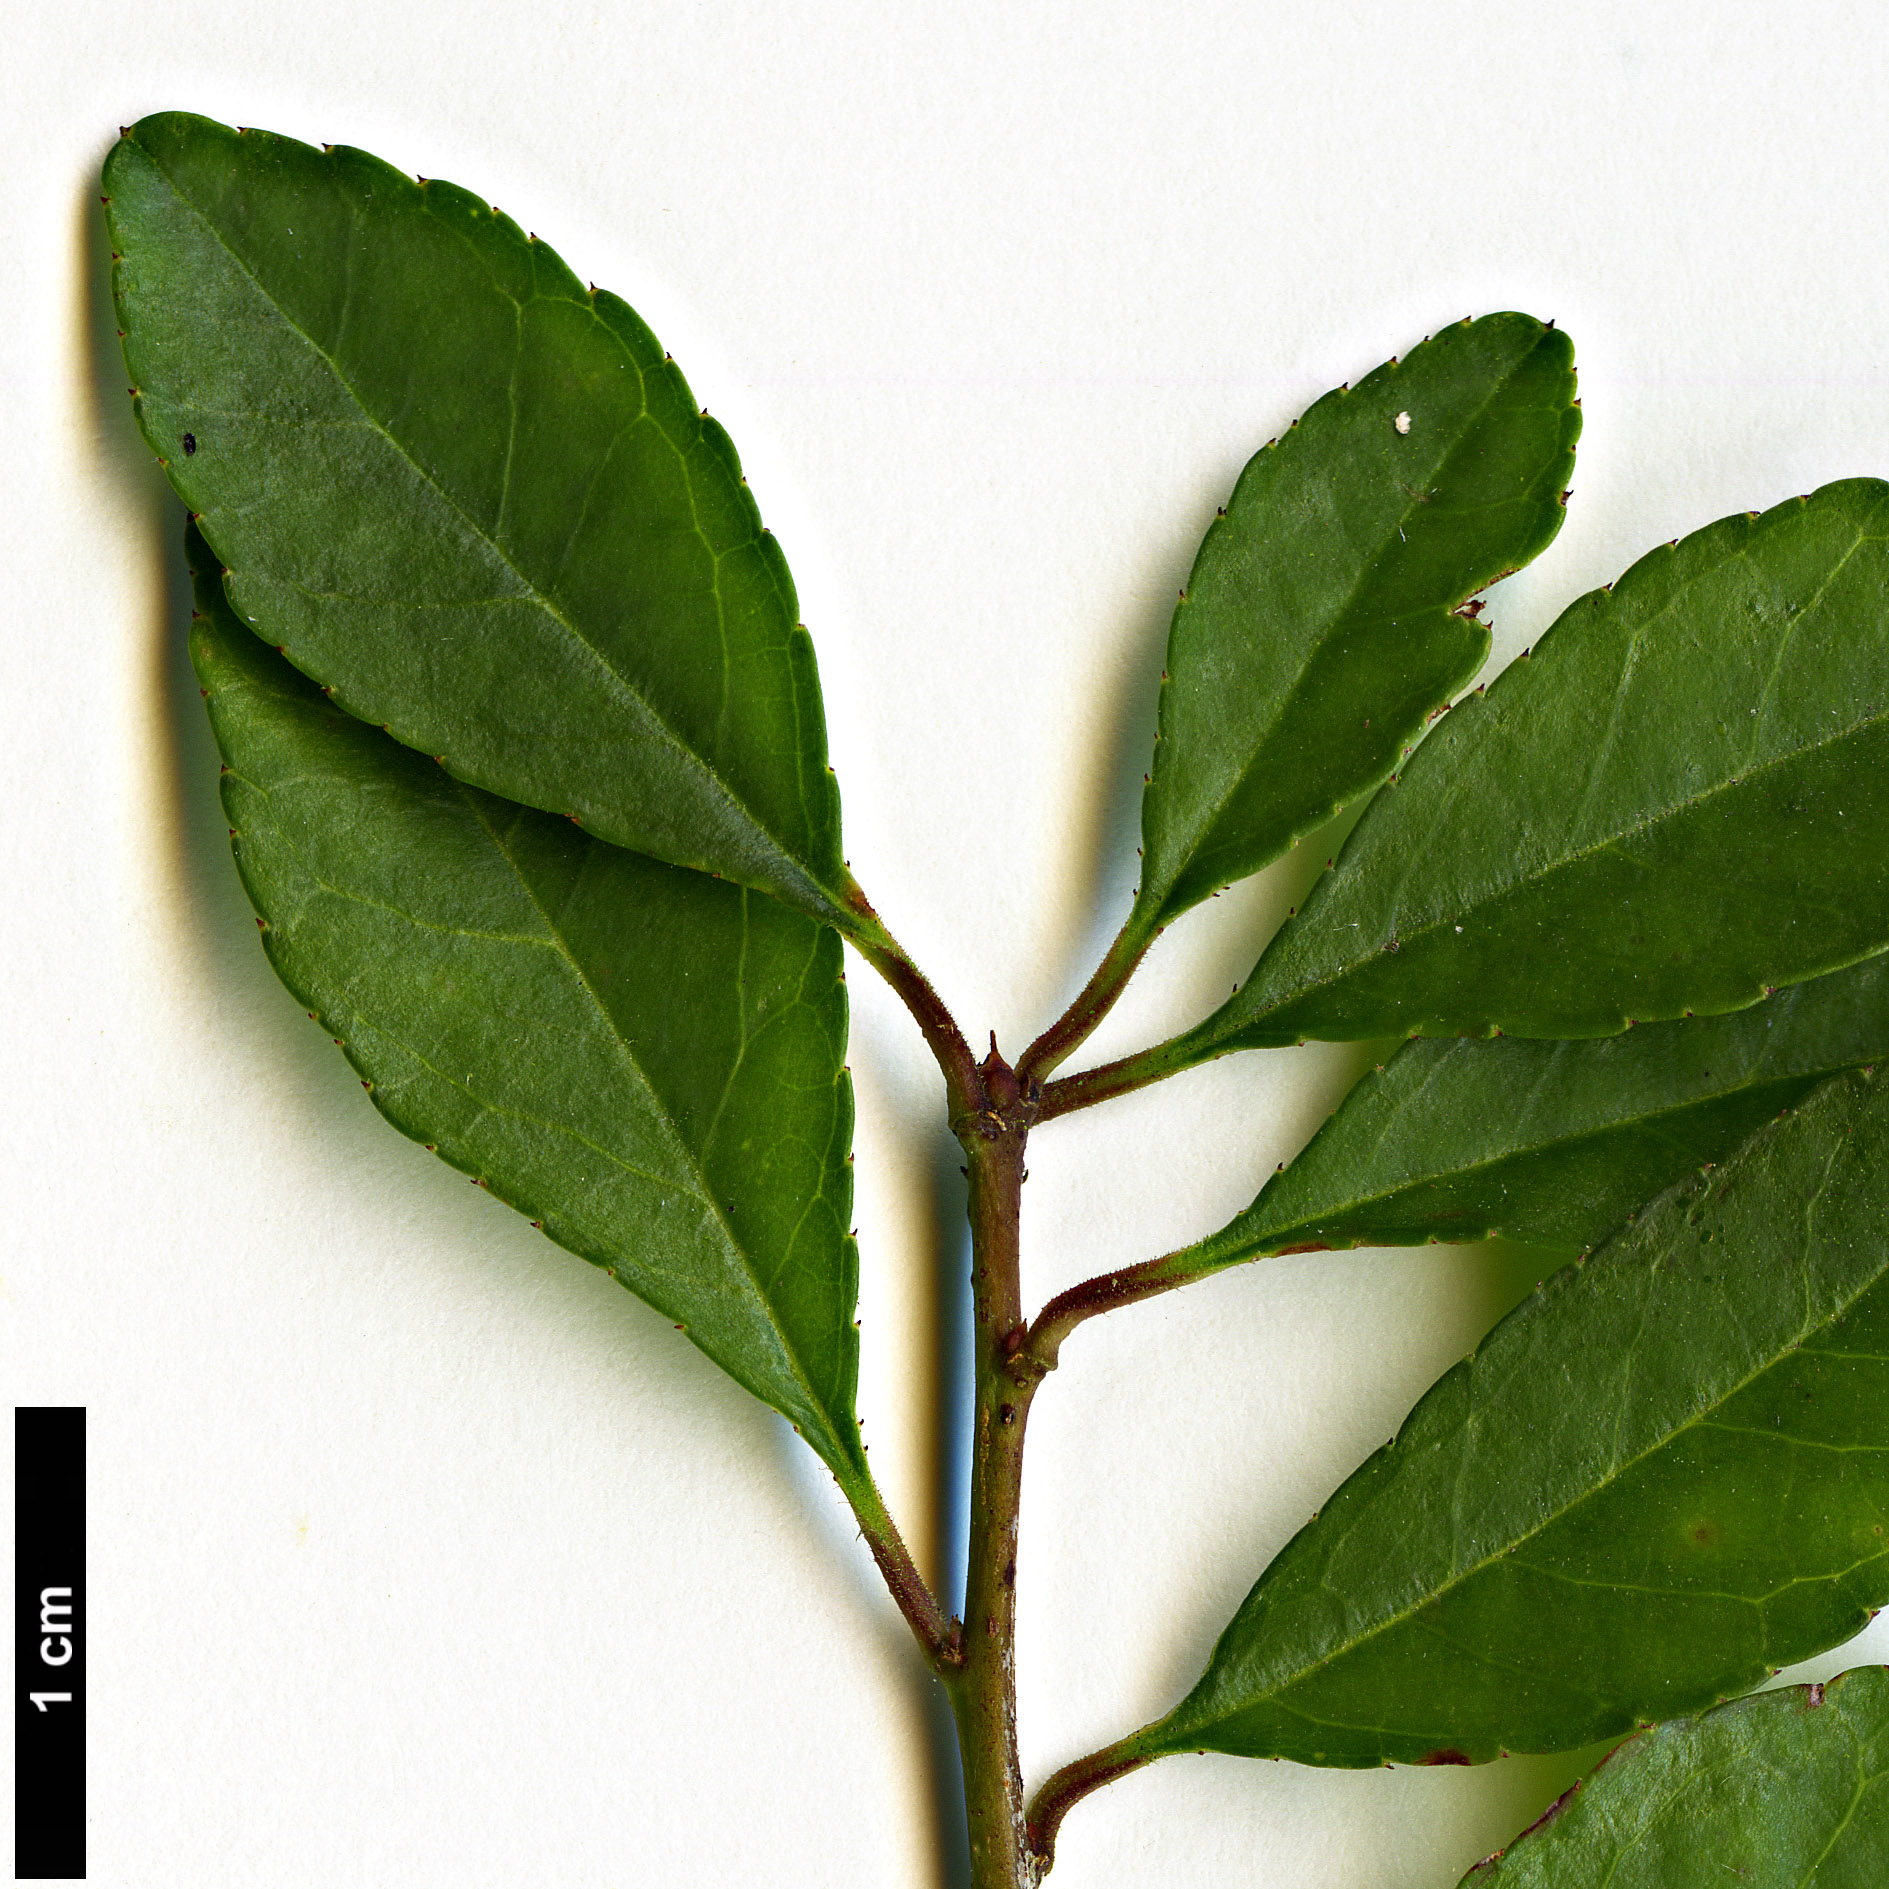 High resolution image: Family: Aquifoliaceae - Genus: Ilex - Taxon: curtisii